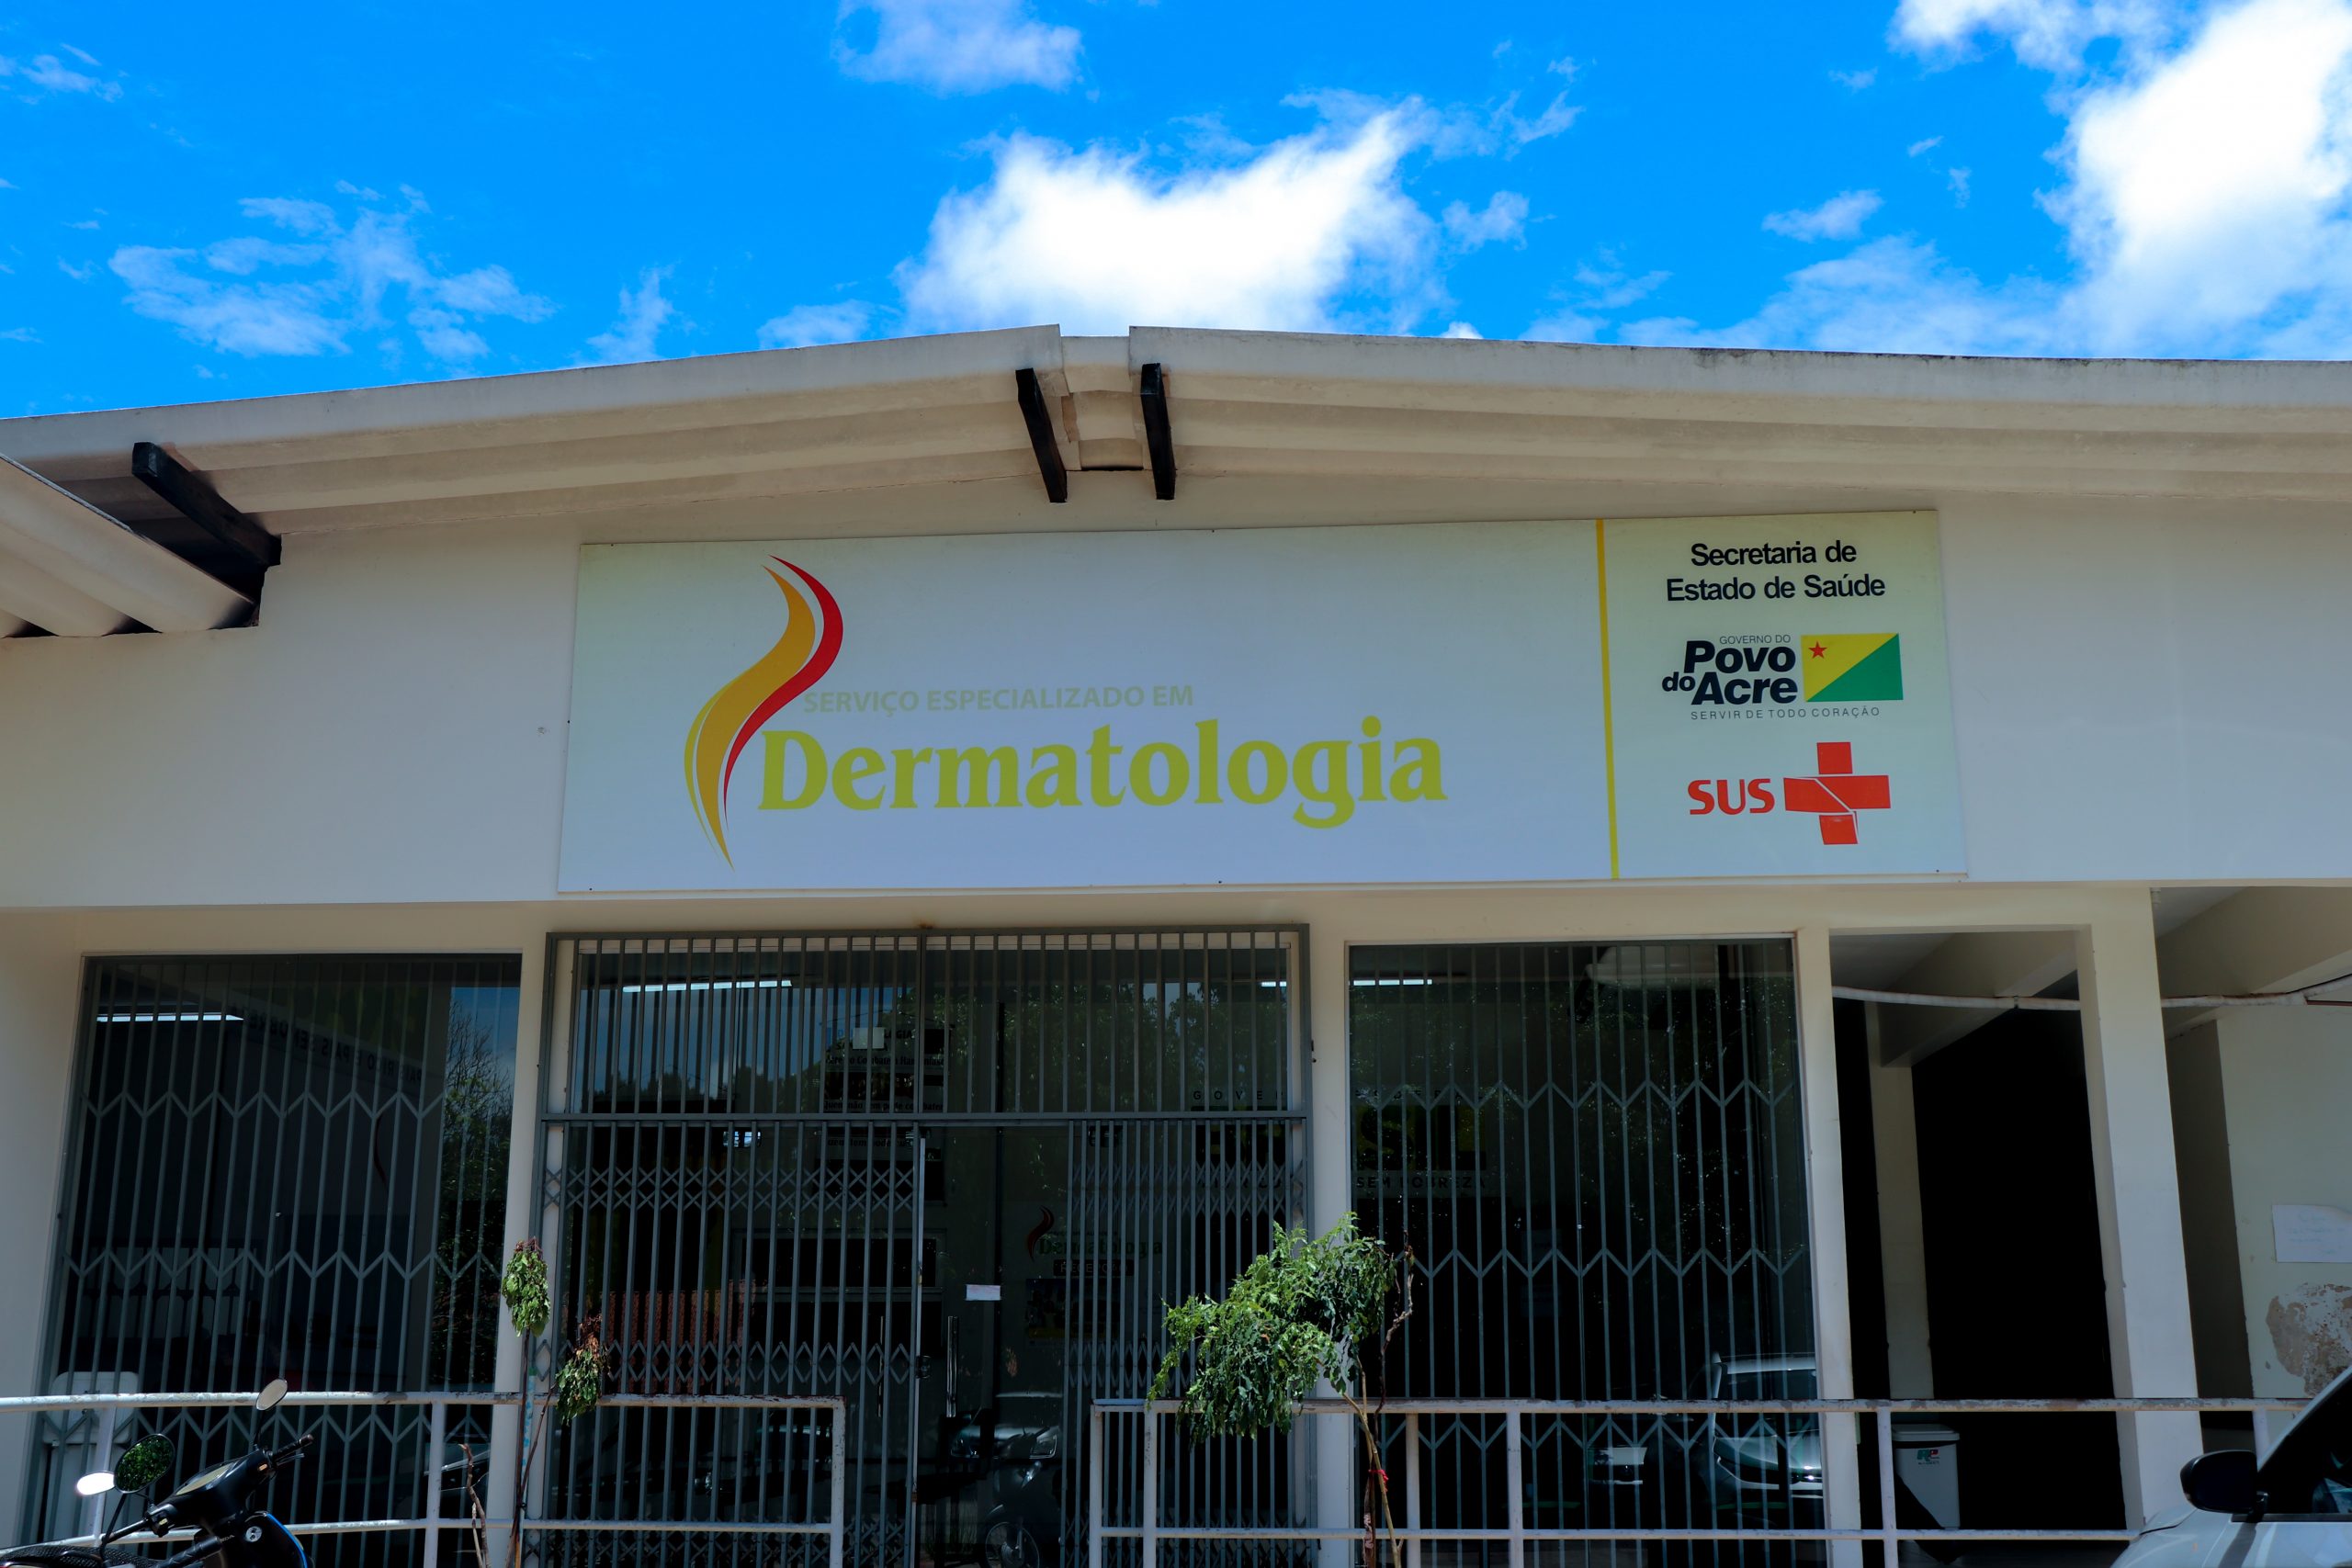 Dermatologia HUEC - Site do serviço de dermatologia do hospital